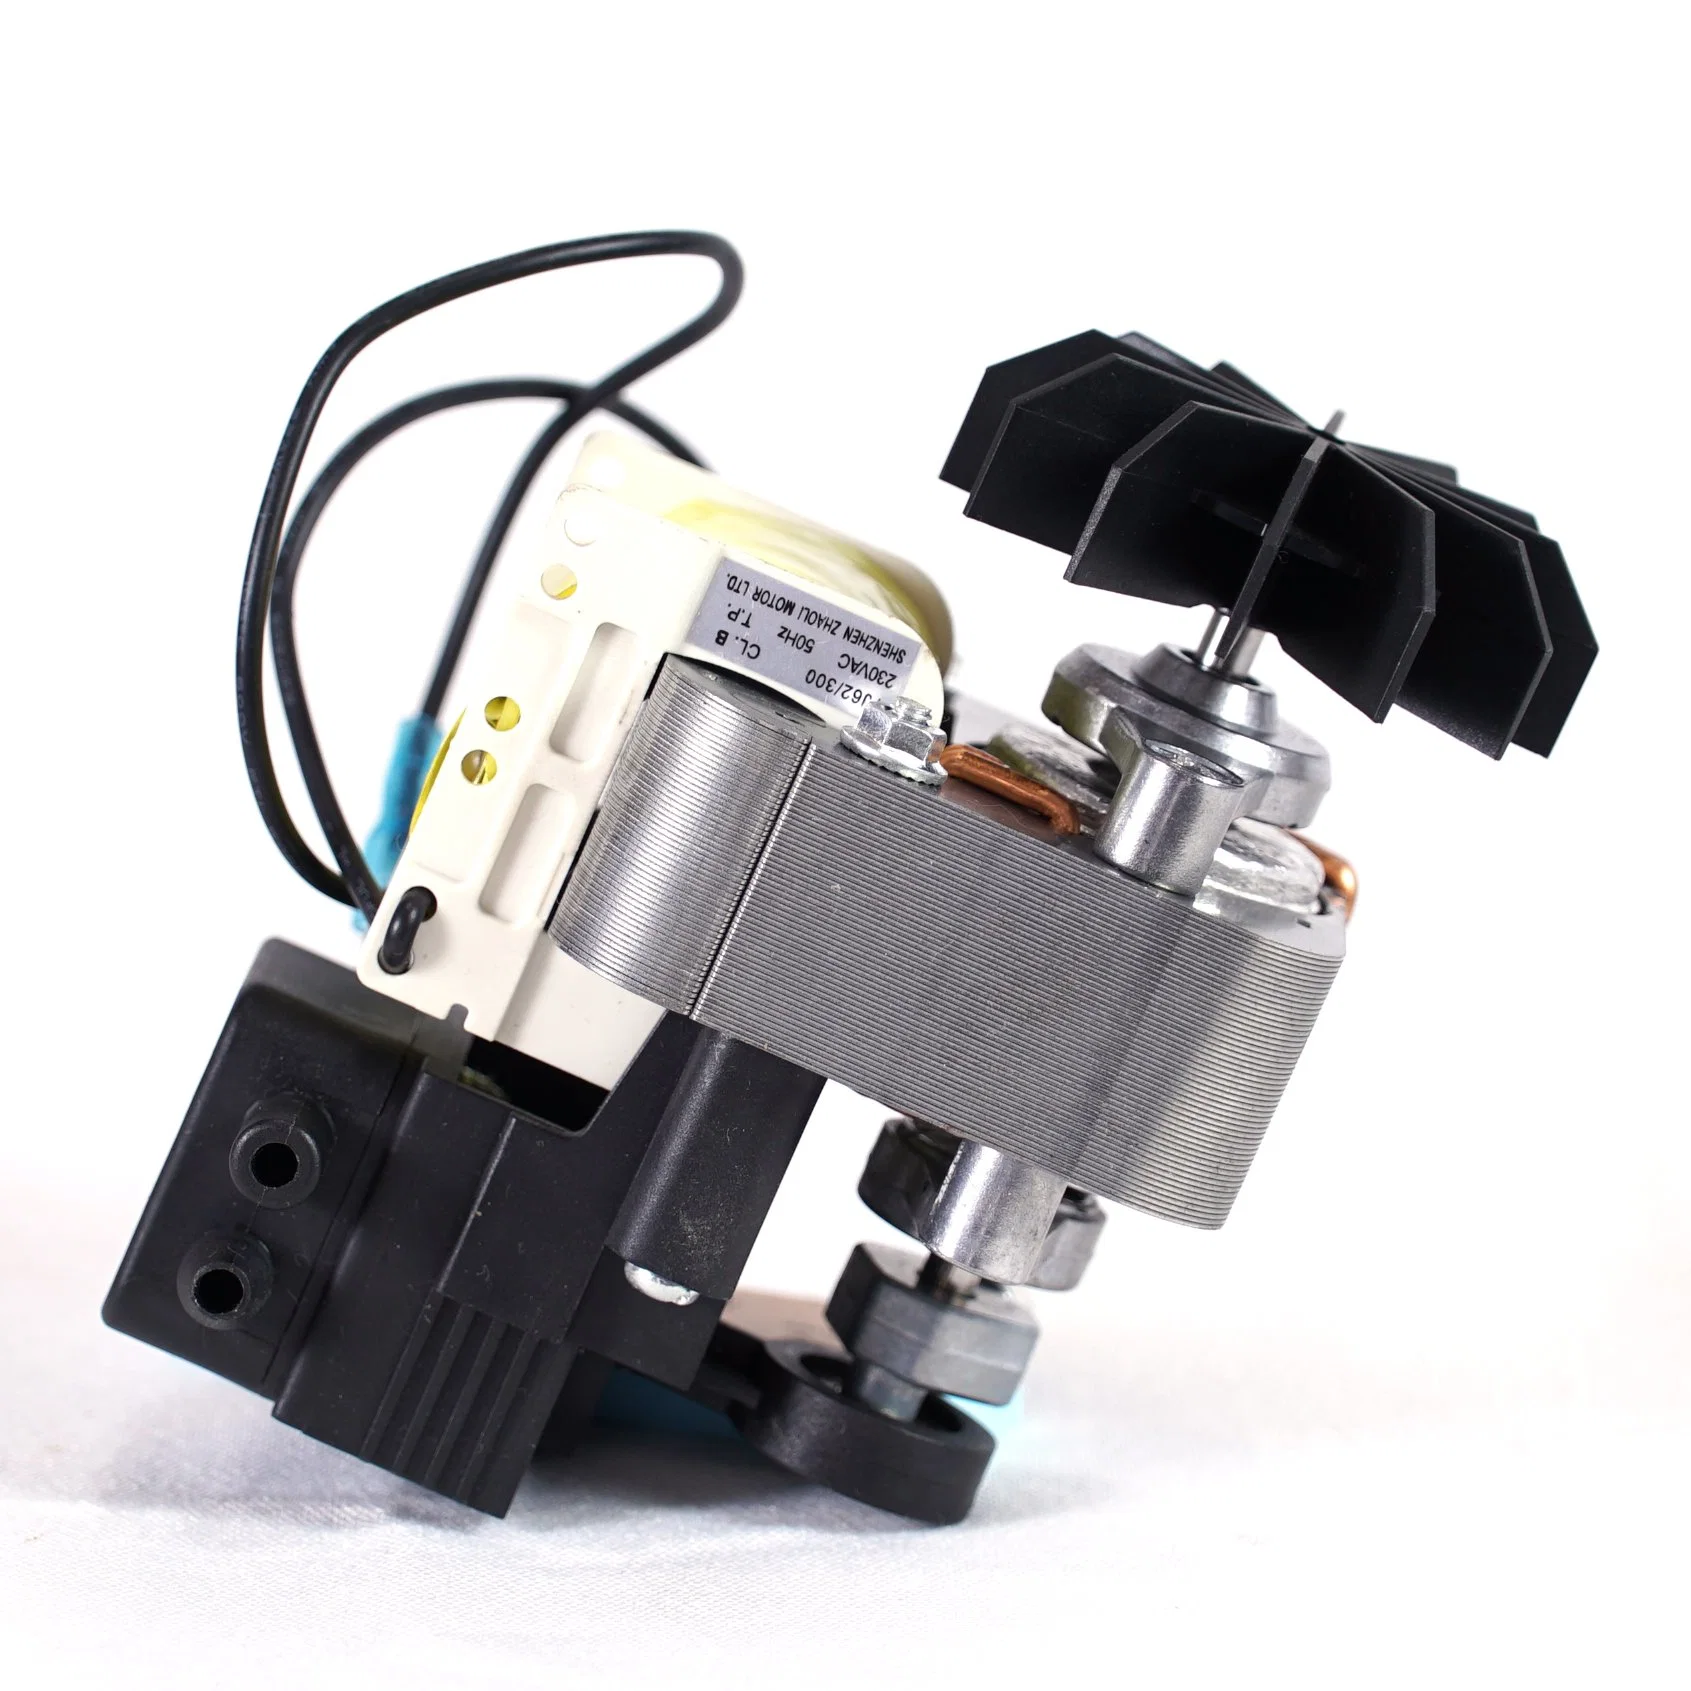 CCC CCC, CE aprobó OEM Nebulizador Compresor Motor con la cabeza de bomba